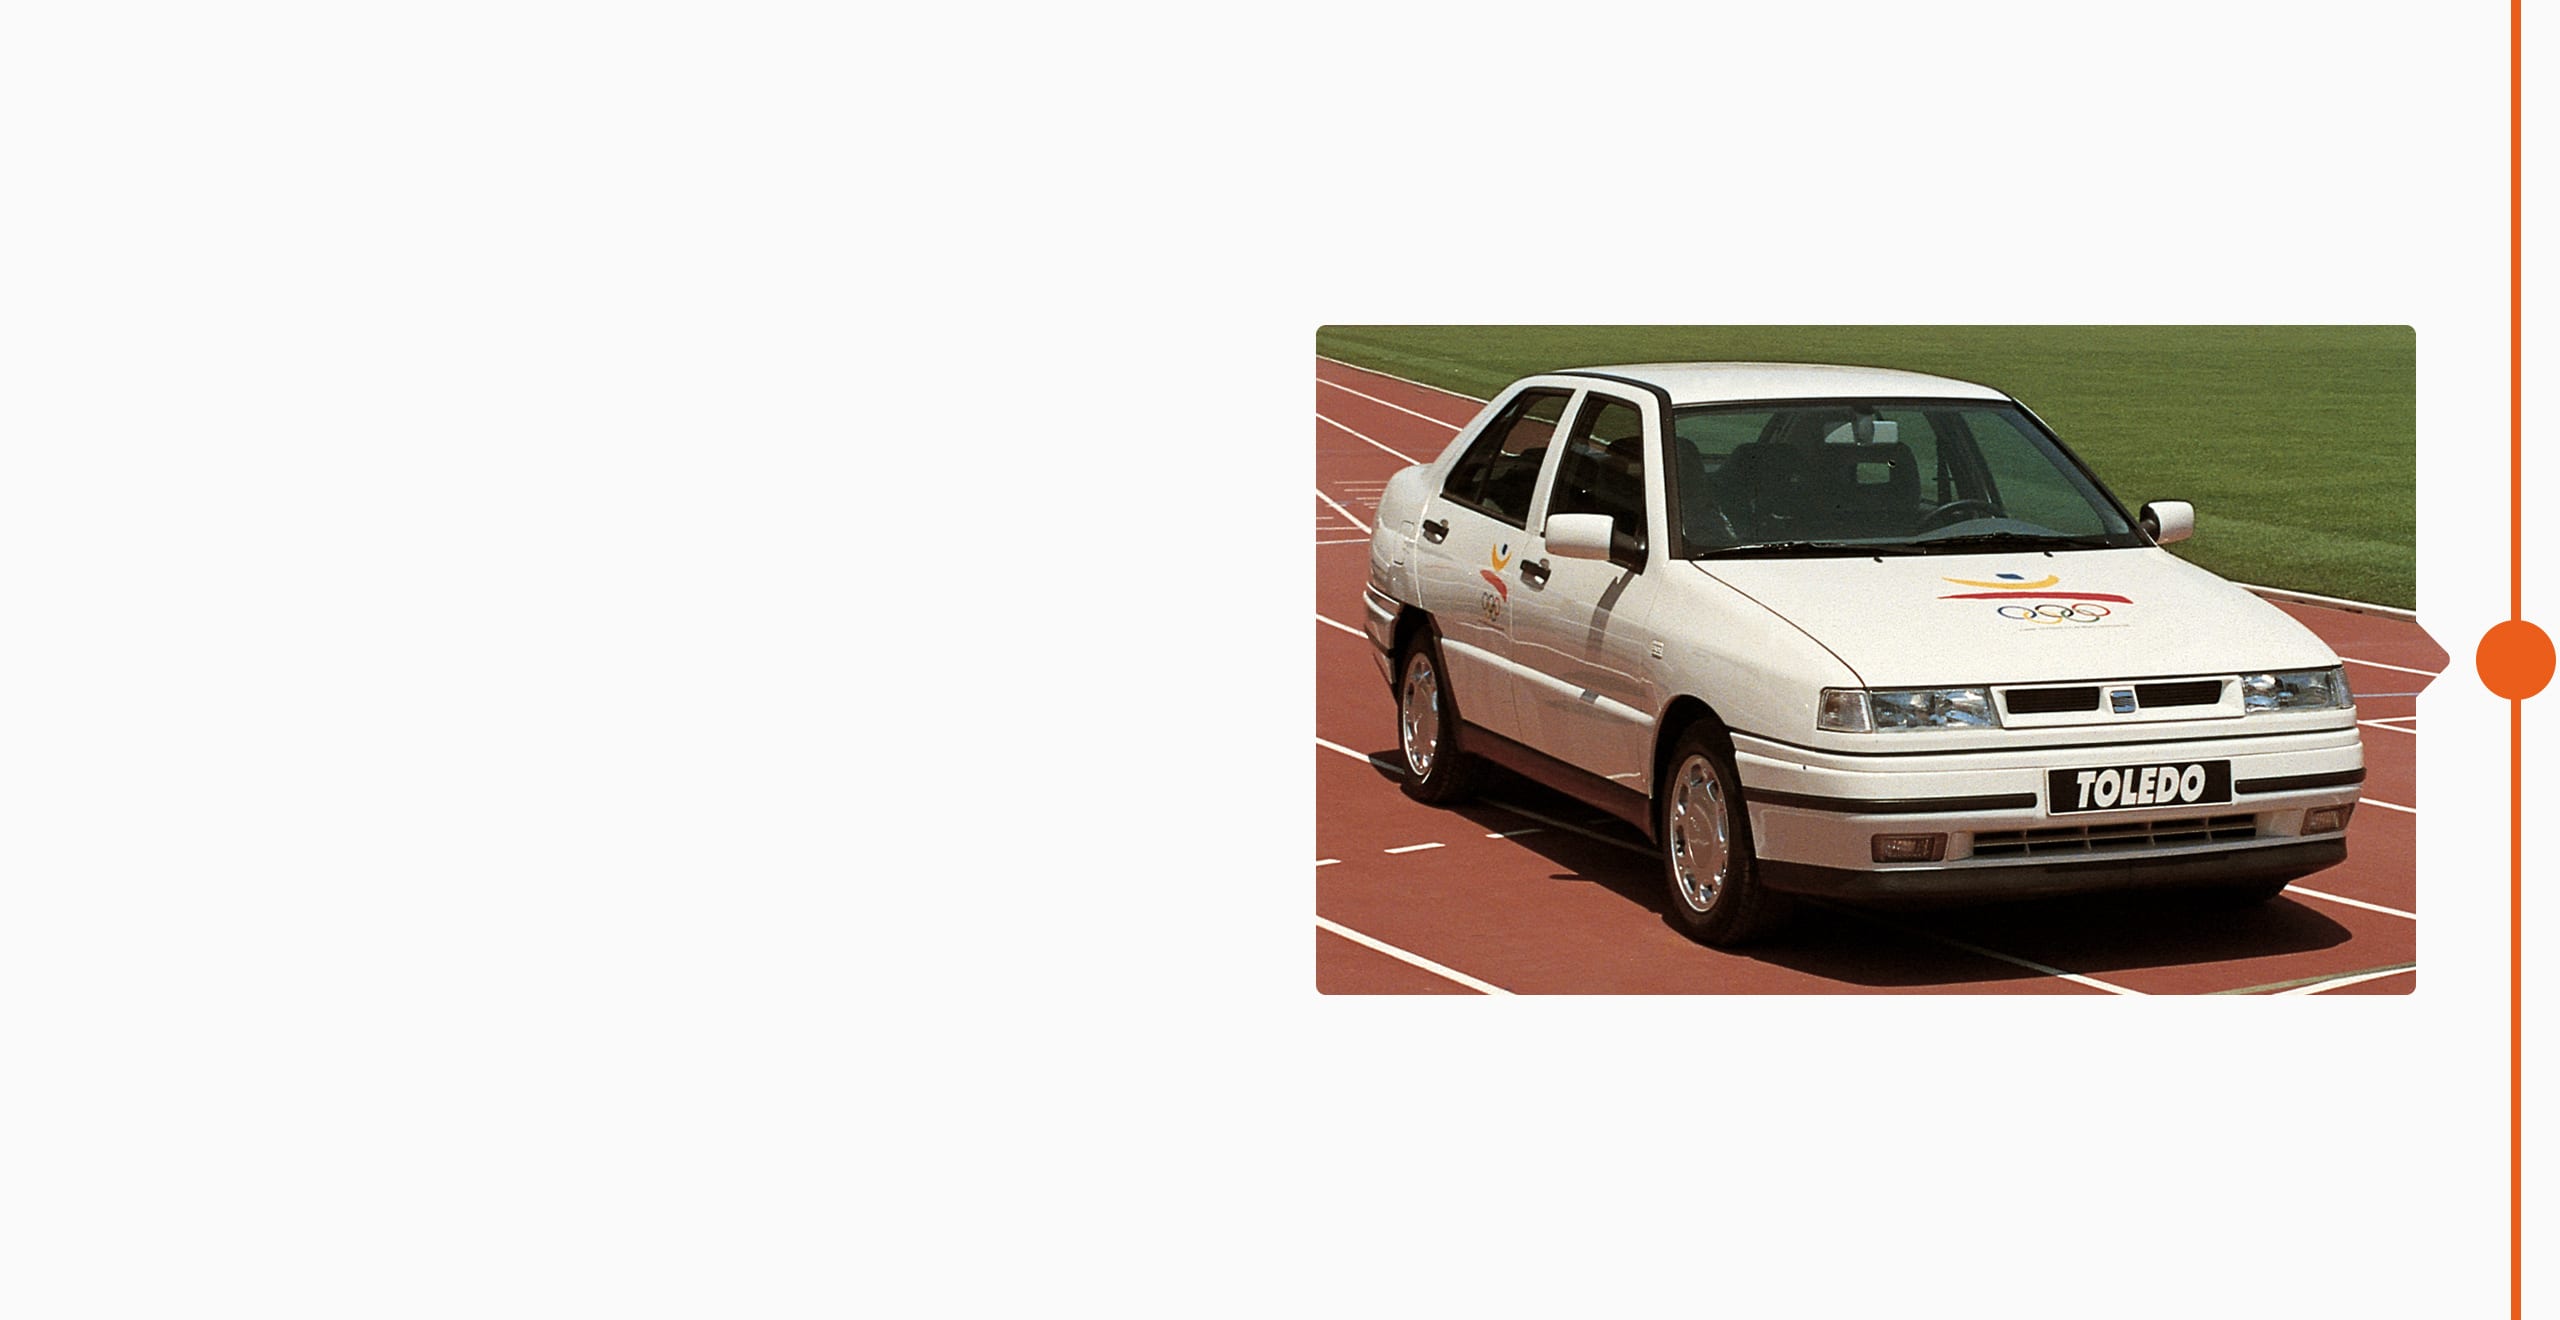 Vista frontal lateral del SEAT Toledo, coche oficial de los Juegos Olímpicos de 1992, en la pista de atletismo